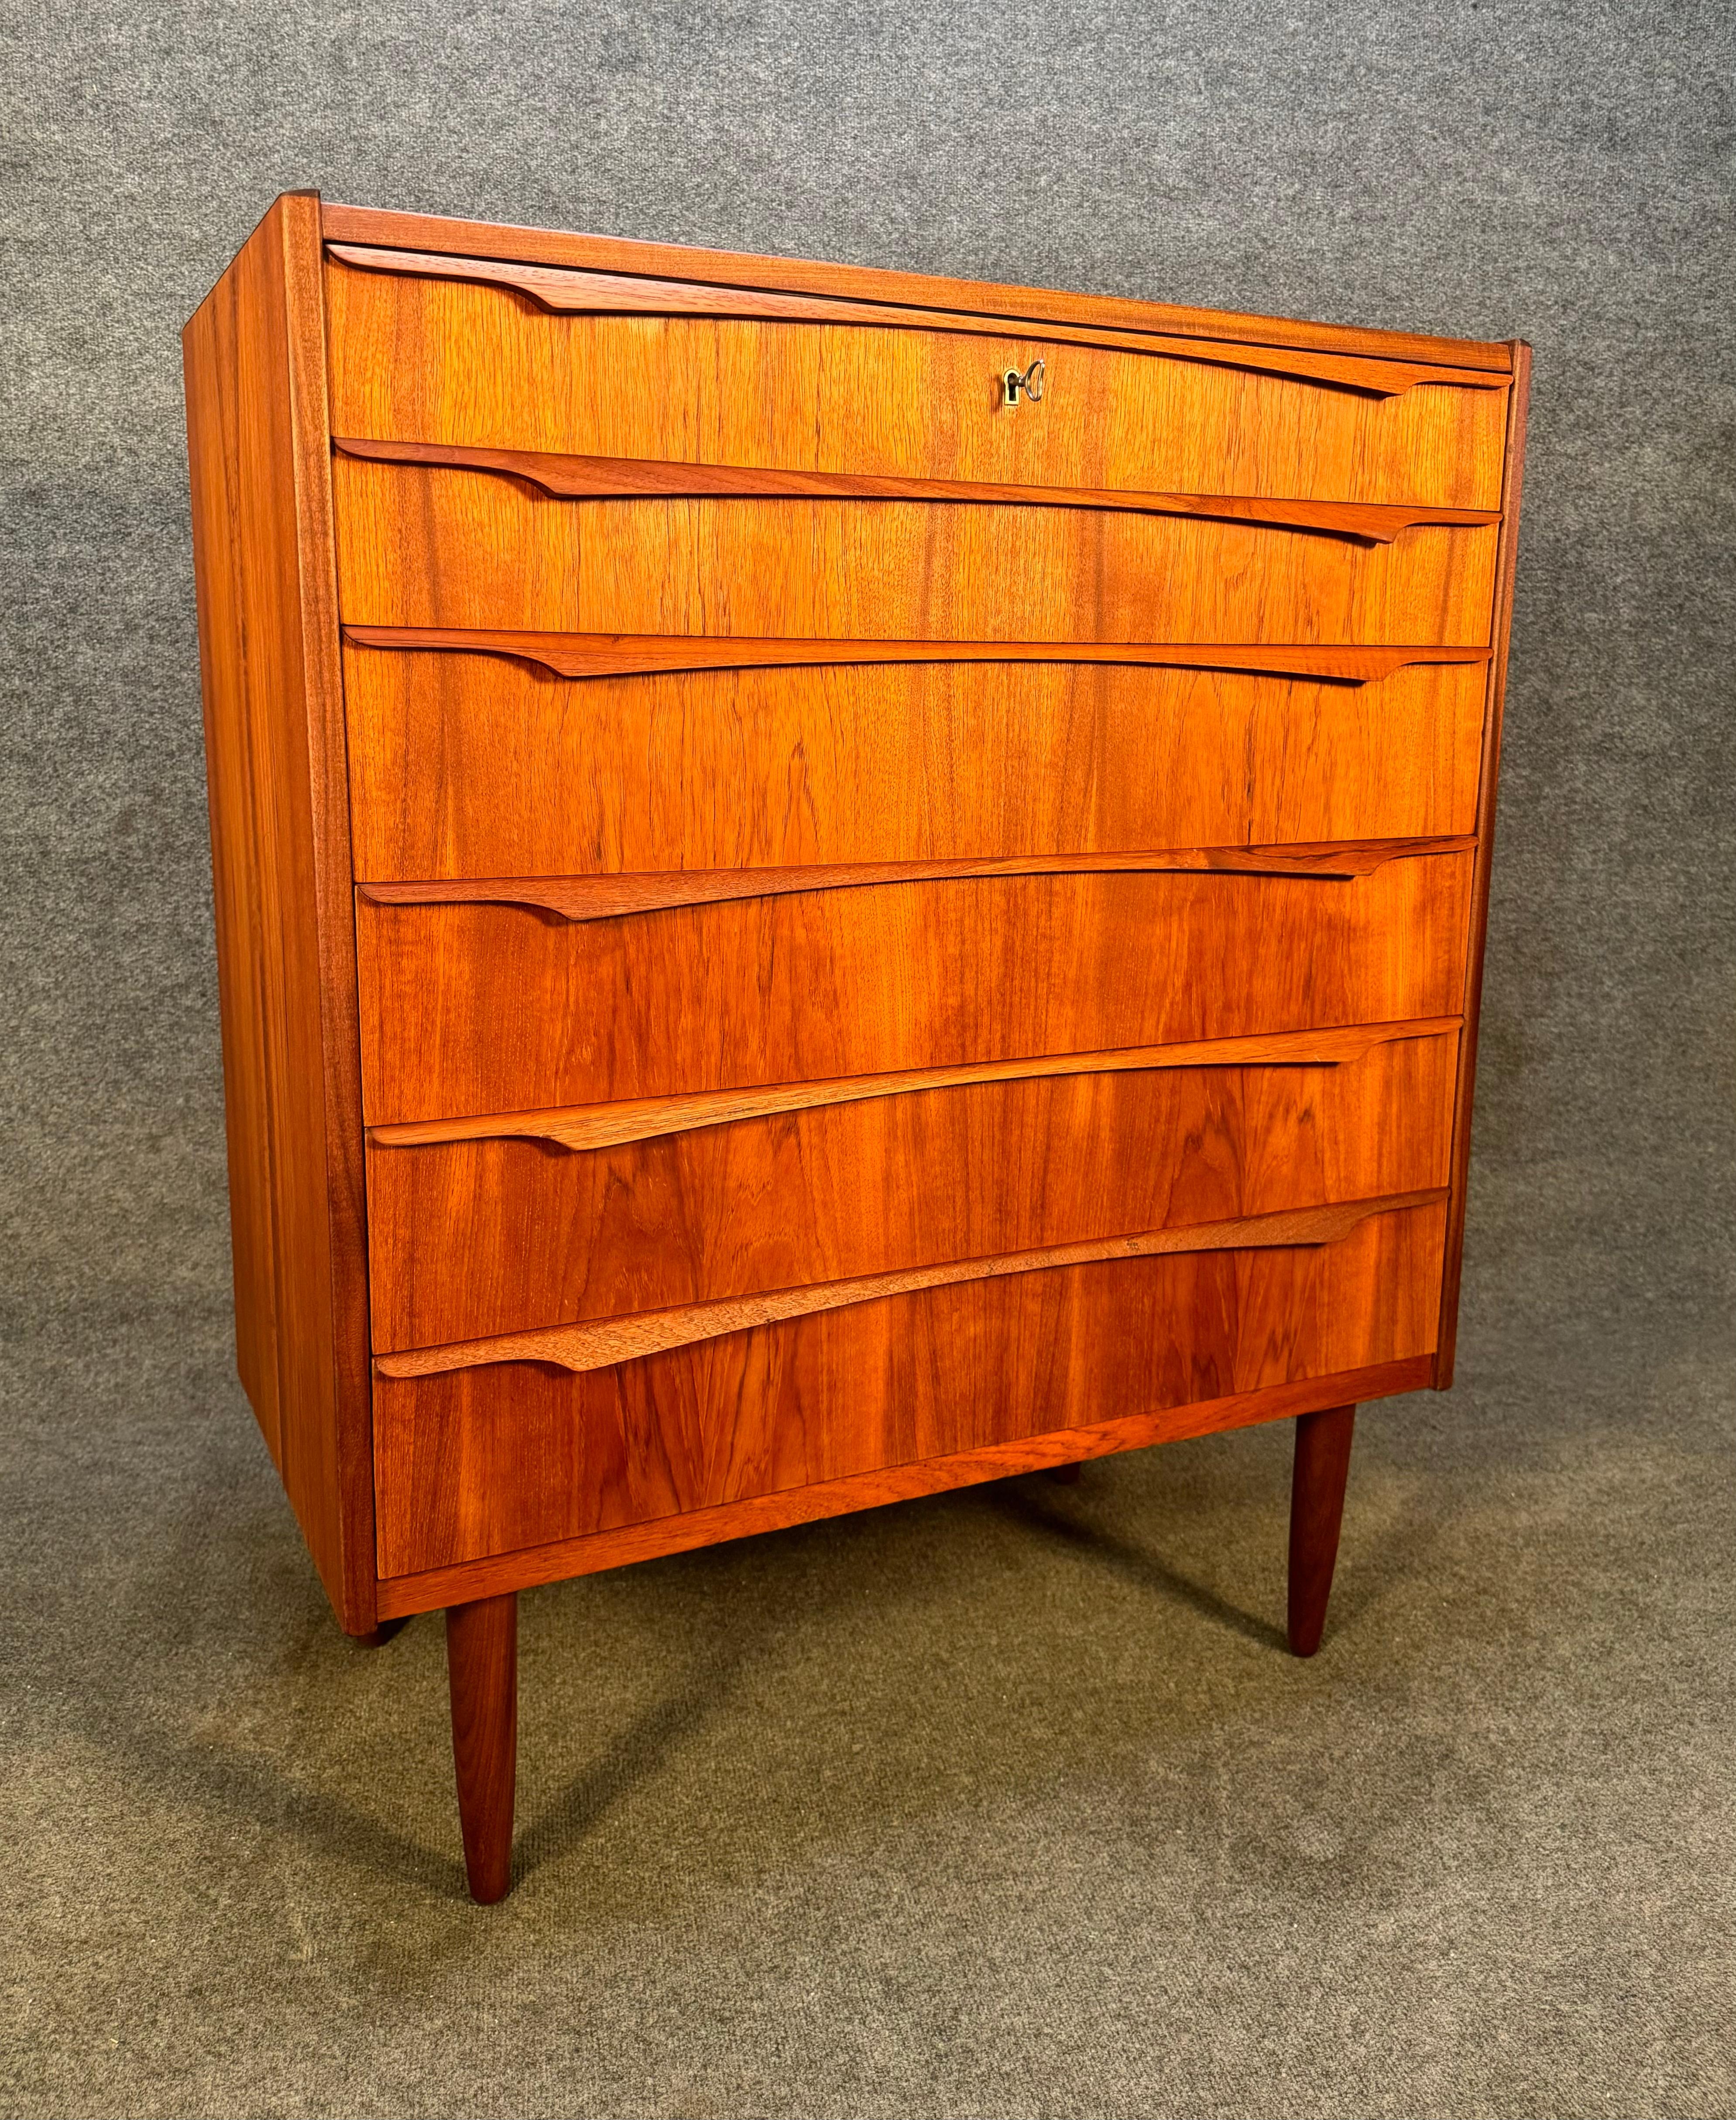 Woodwork Vintage Danish Mid Century Modern Teak Chest of Drawers Dresser